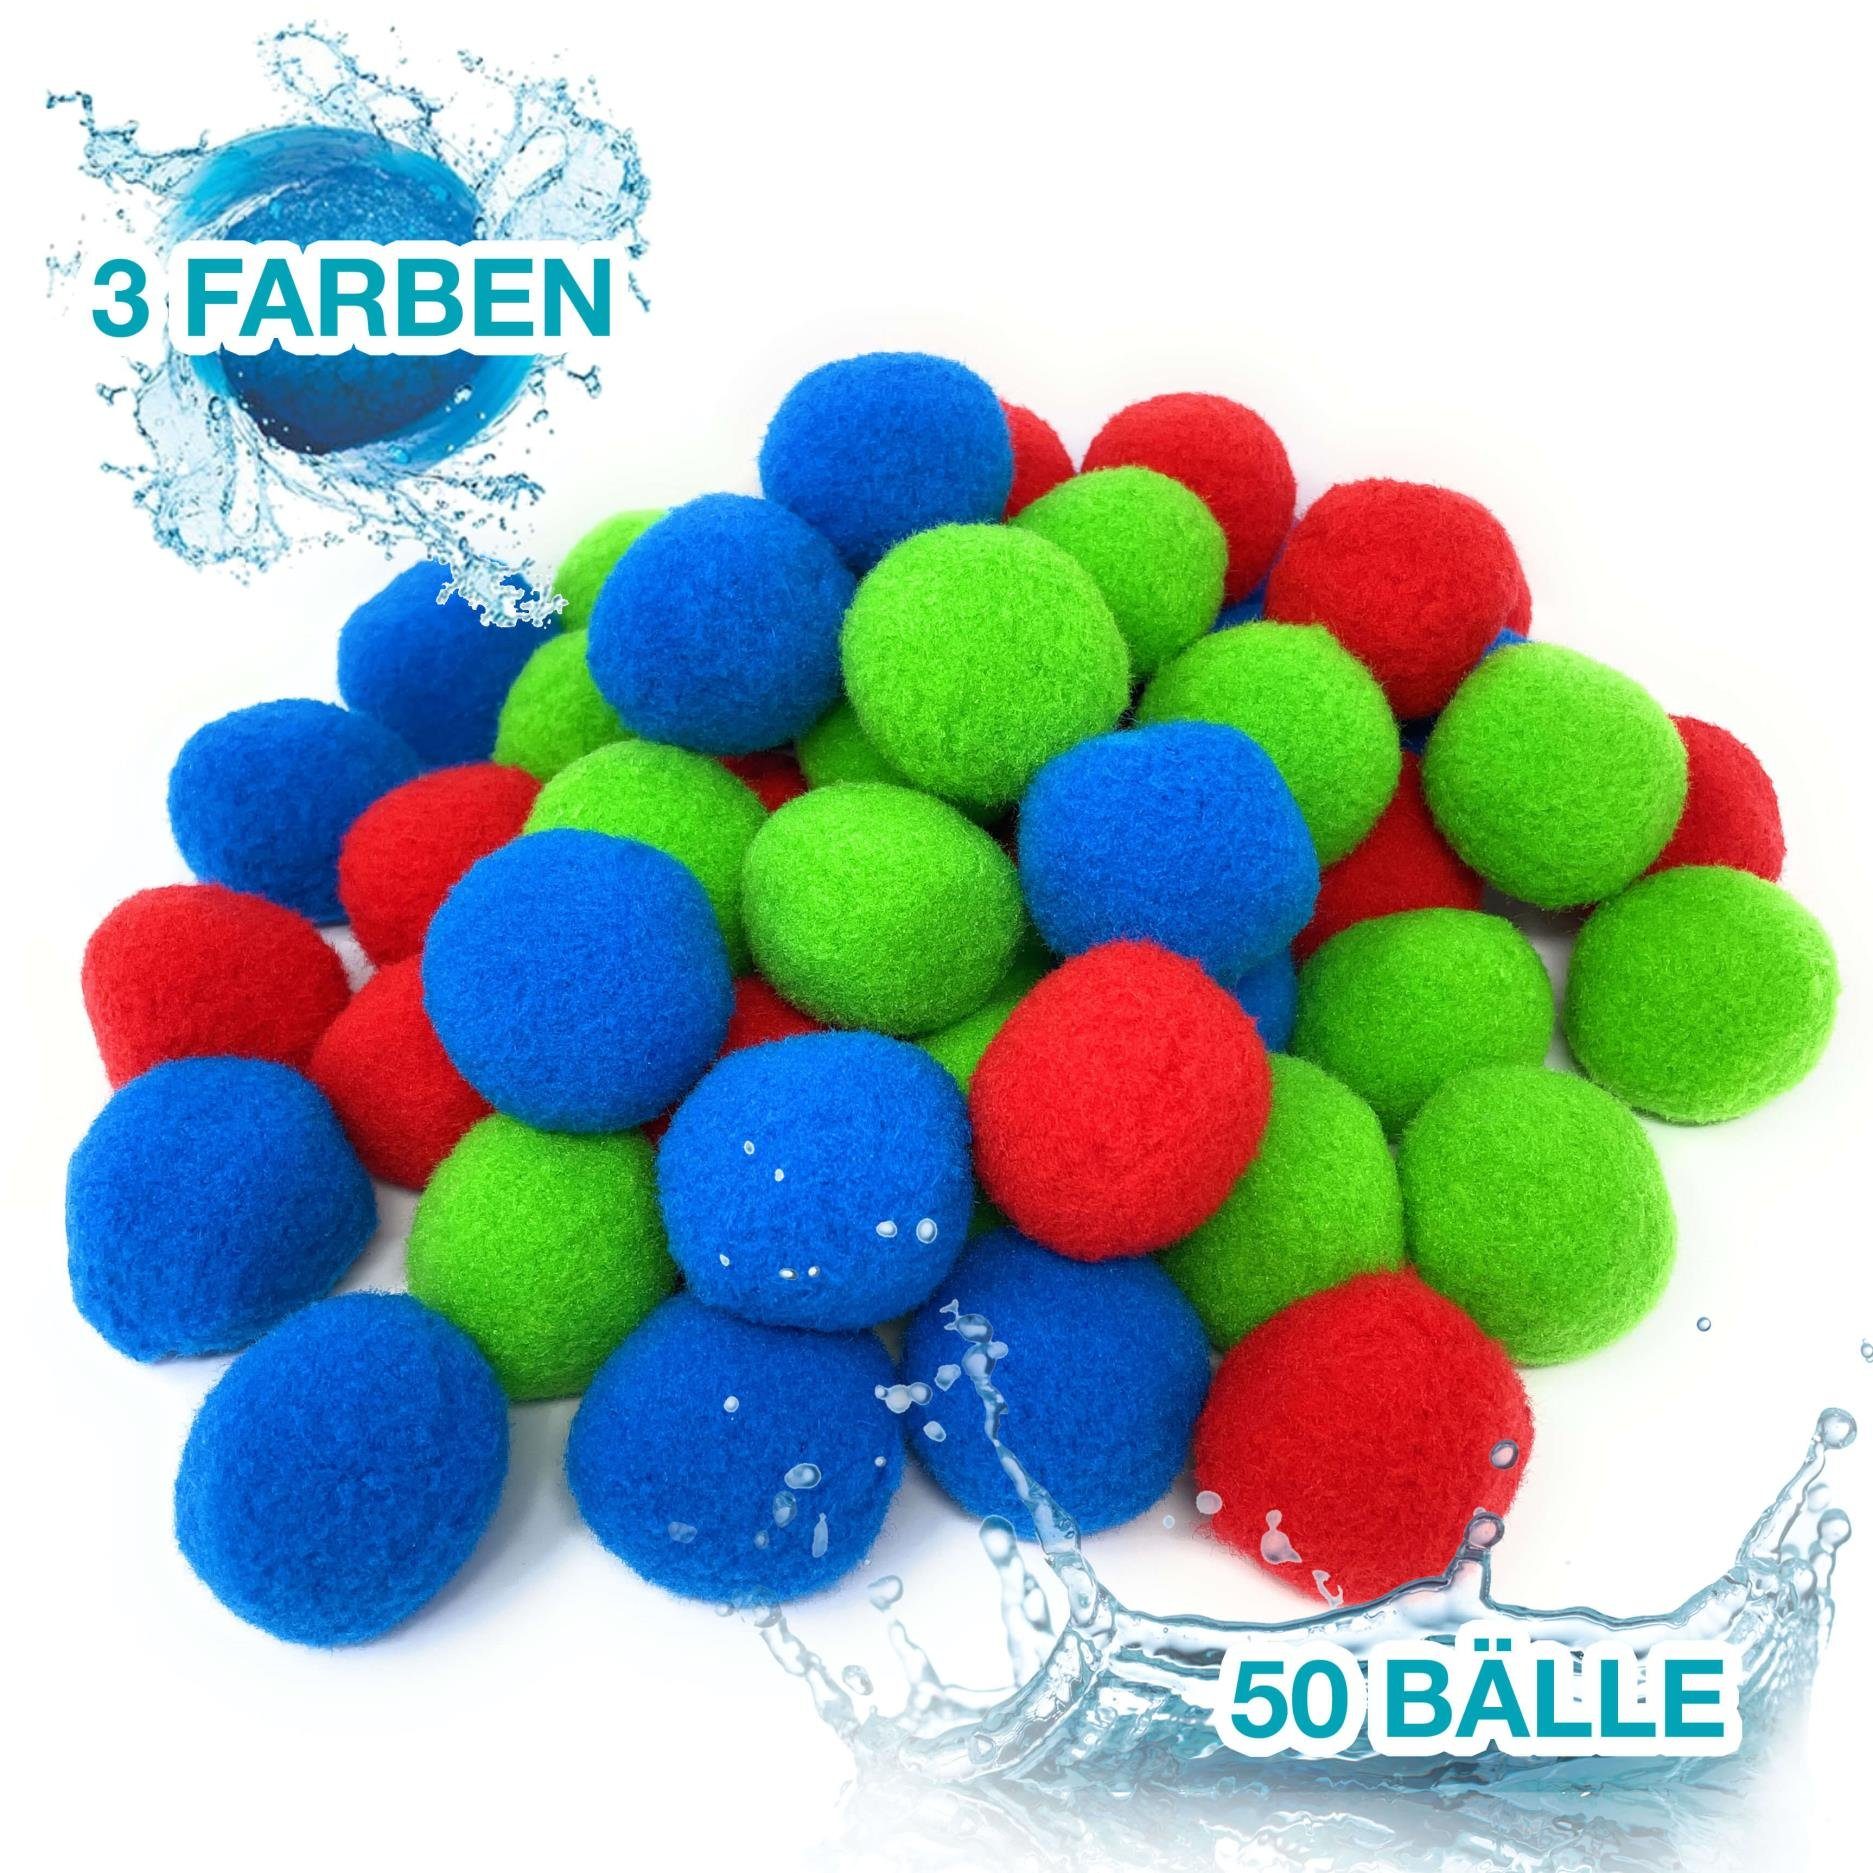 TOBJA Lernspielzeug Wasserbomben Set Splash Bälle, Wiederverwendbare Wasserballons 50 Stück